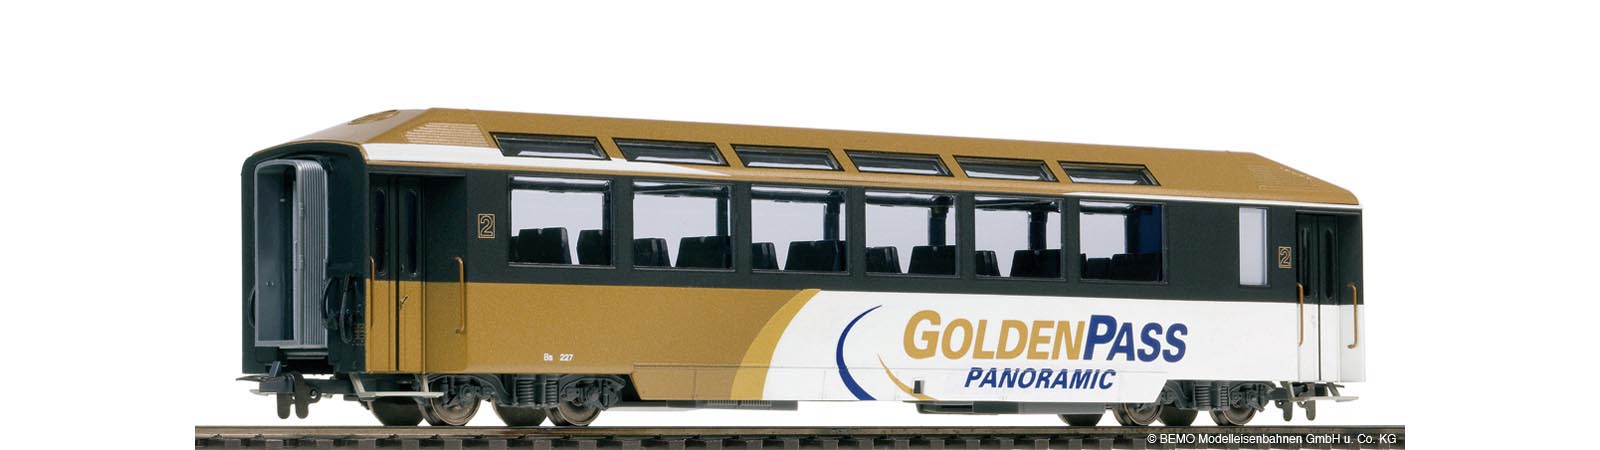 Panoramawagen Golden Pass